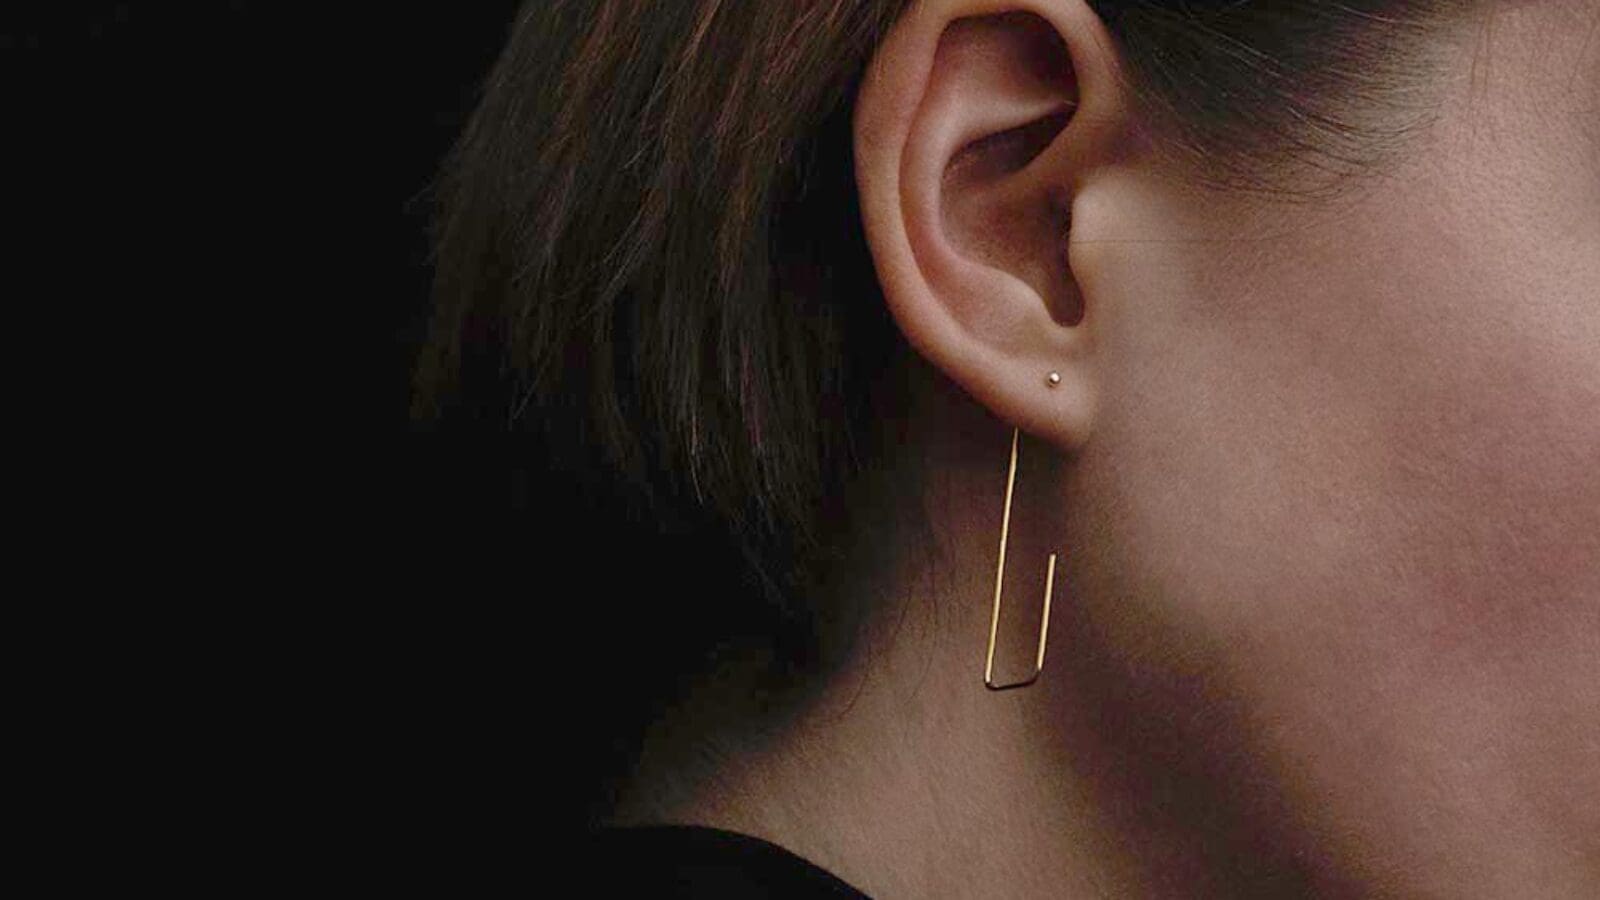 Verlosung: Natascha von Hirschhausen – Minimalist Earrings